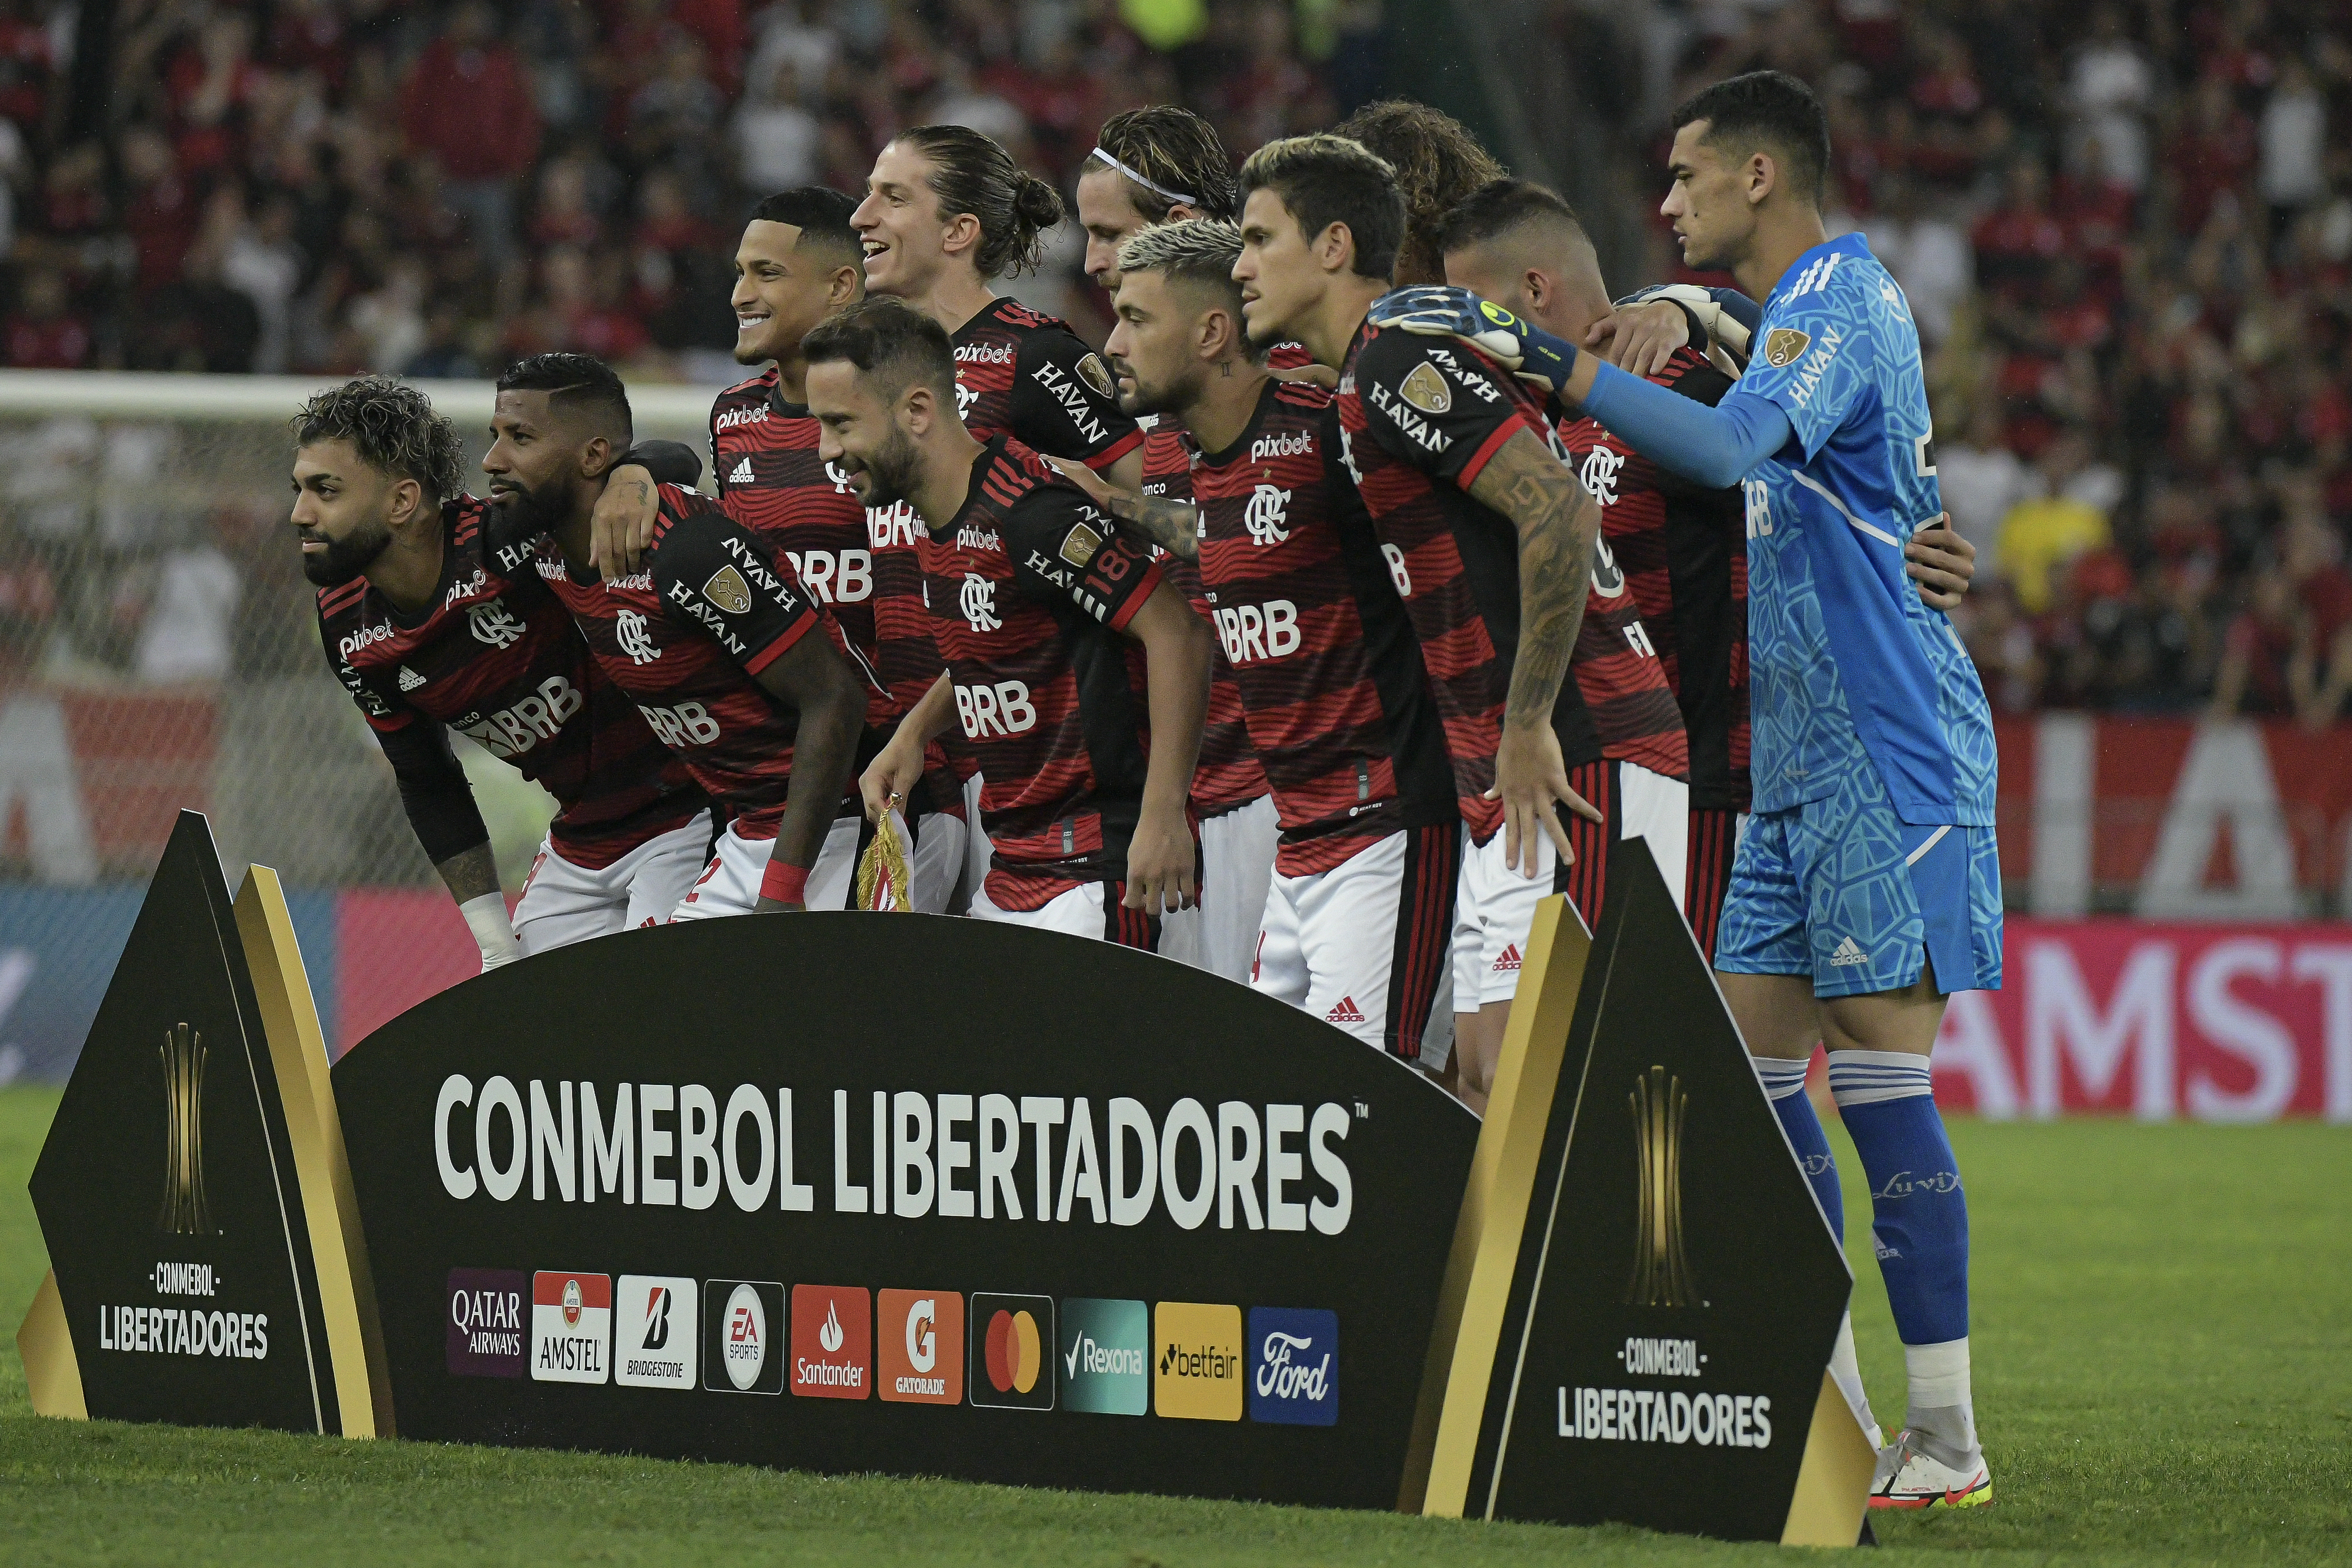 Vélez Sarsfield vs. Clube de Regatas do Flamengo: A Clash of Titans